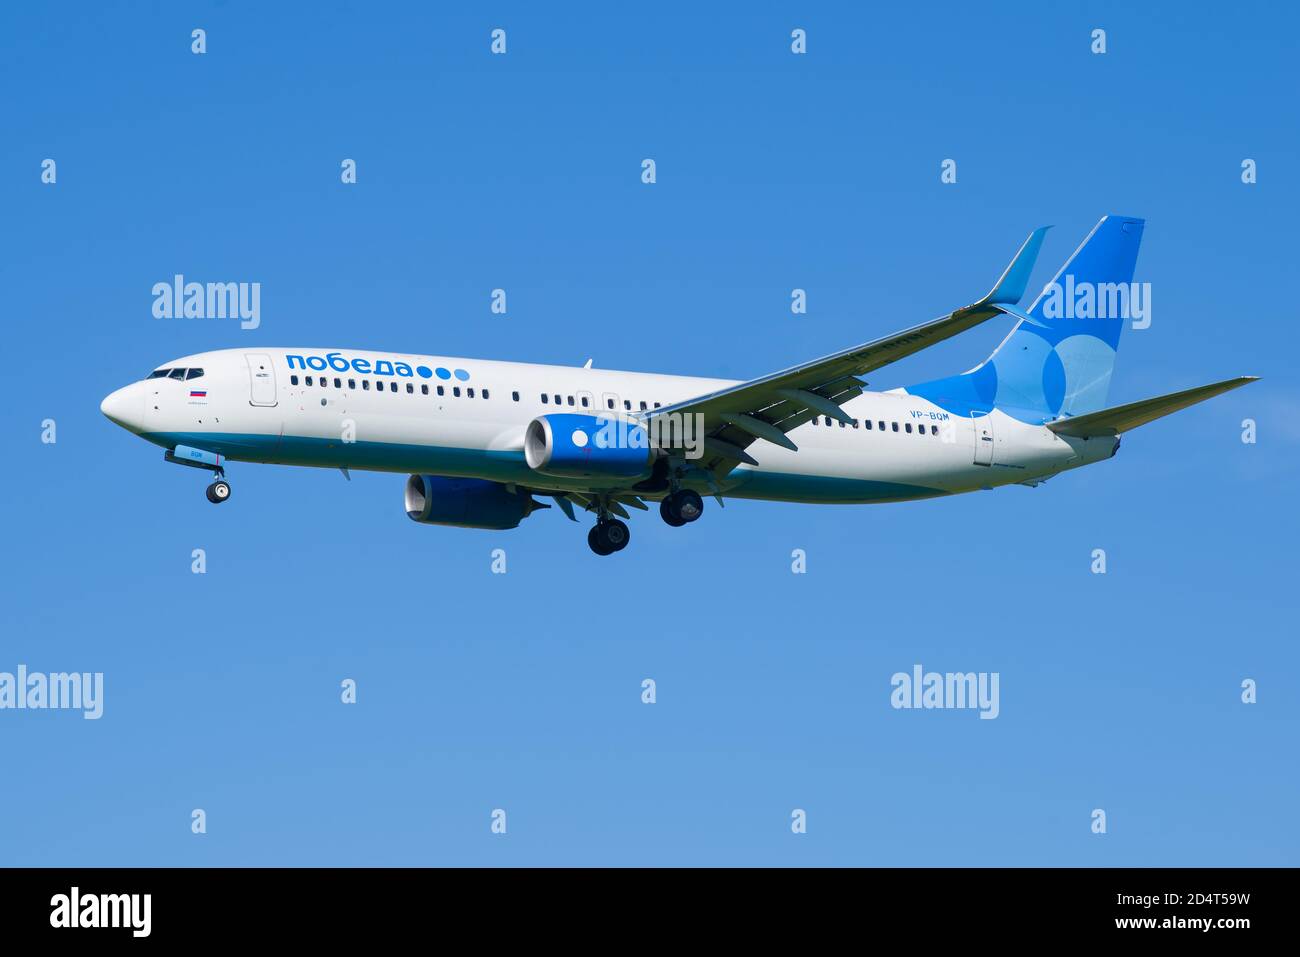 SANKT PETERSBURG, RUSSLAND - 08. AUGUST 2020: Flugzeug Boeing 737-8МК (VP-BQM) von Pobeda Airlines auf Gleitweg in blauem wolkenlosem Himmel Stockfoto